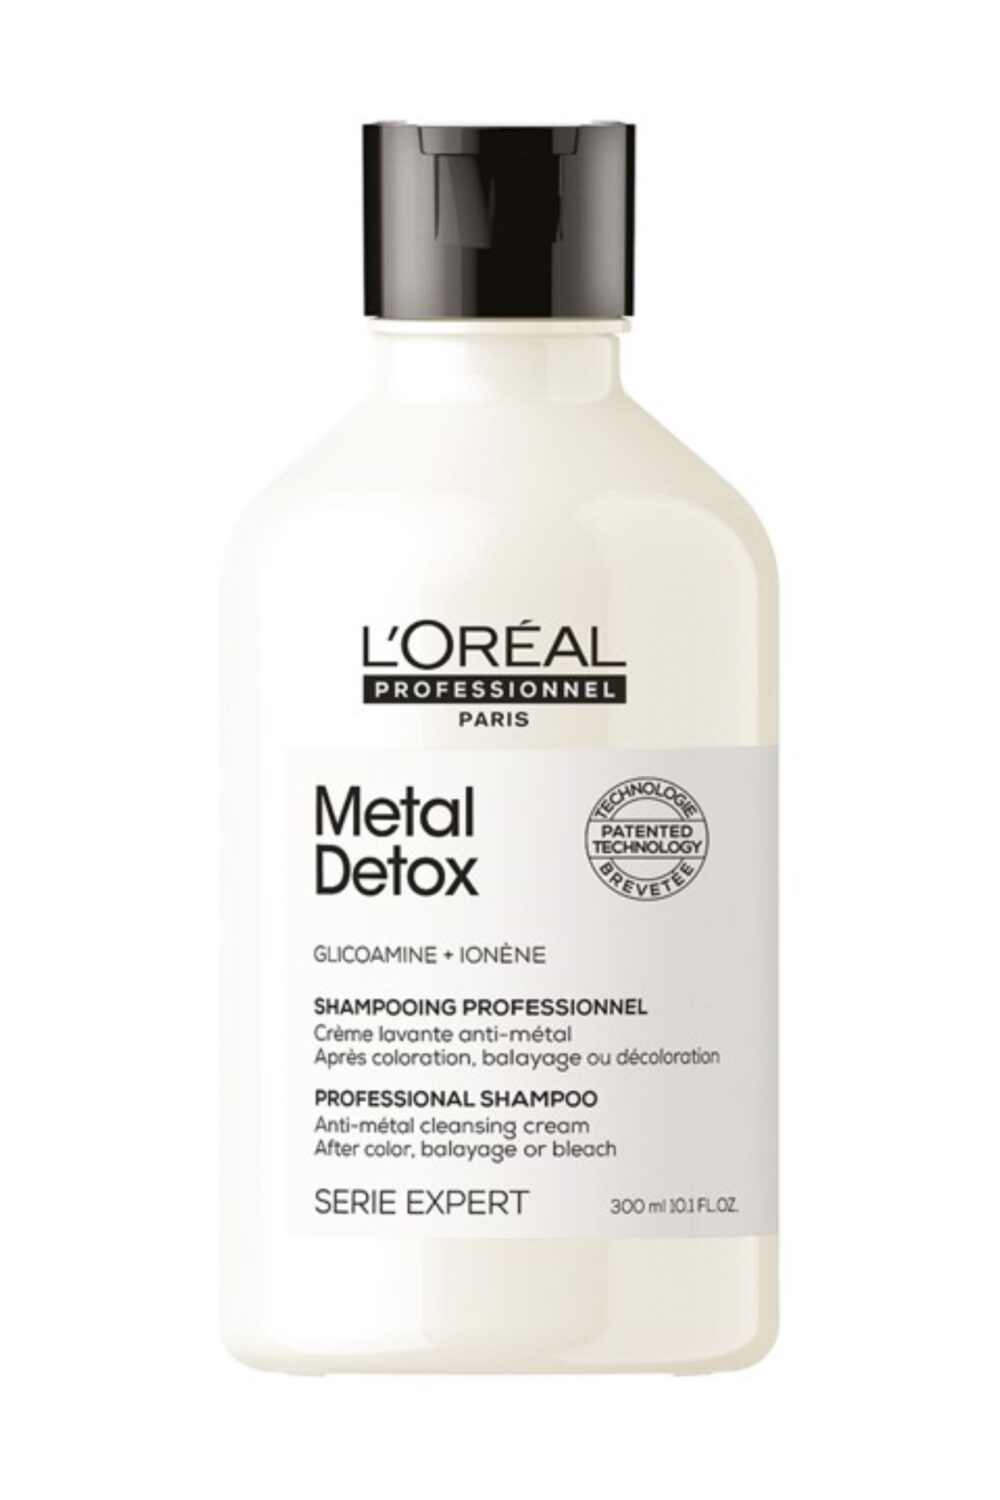 L'Oréal Professionnel - Shampooing professionnel crème lavante anti-métal Metal Detox